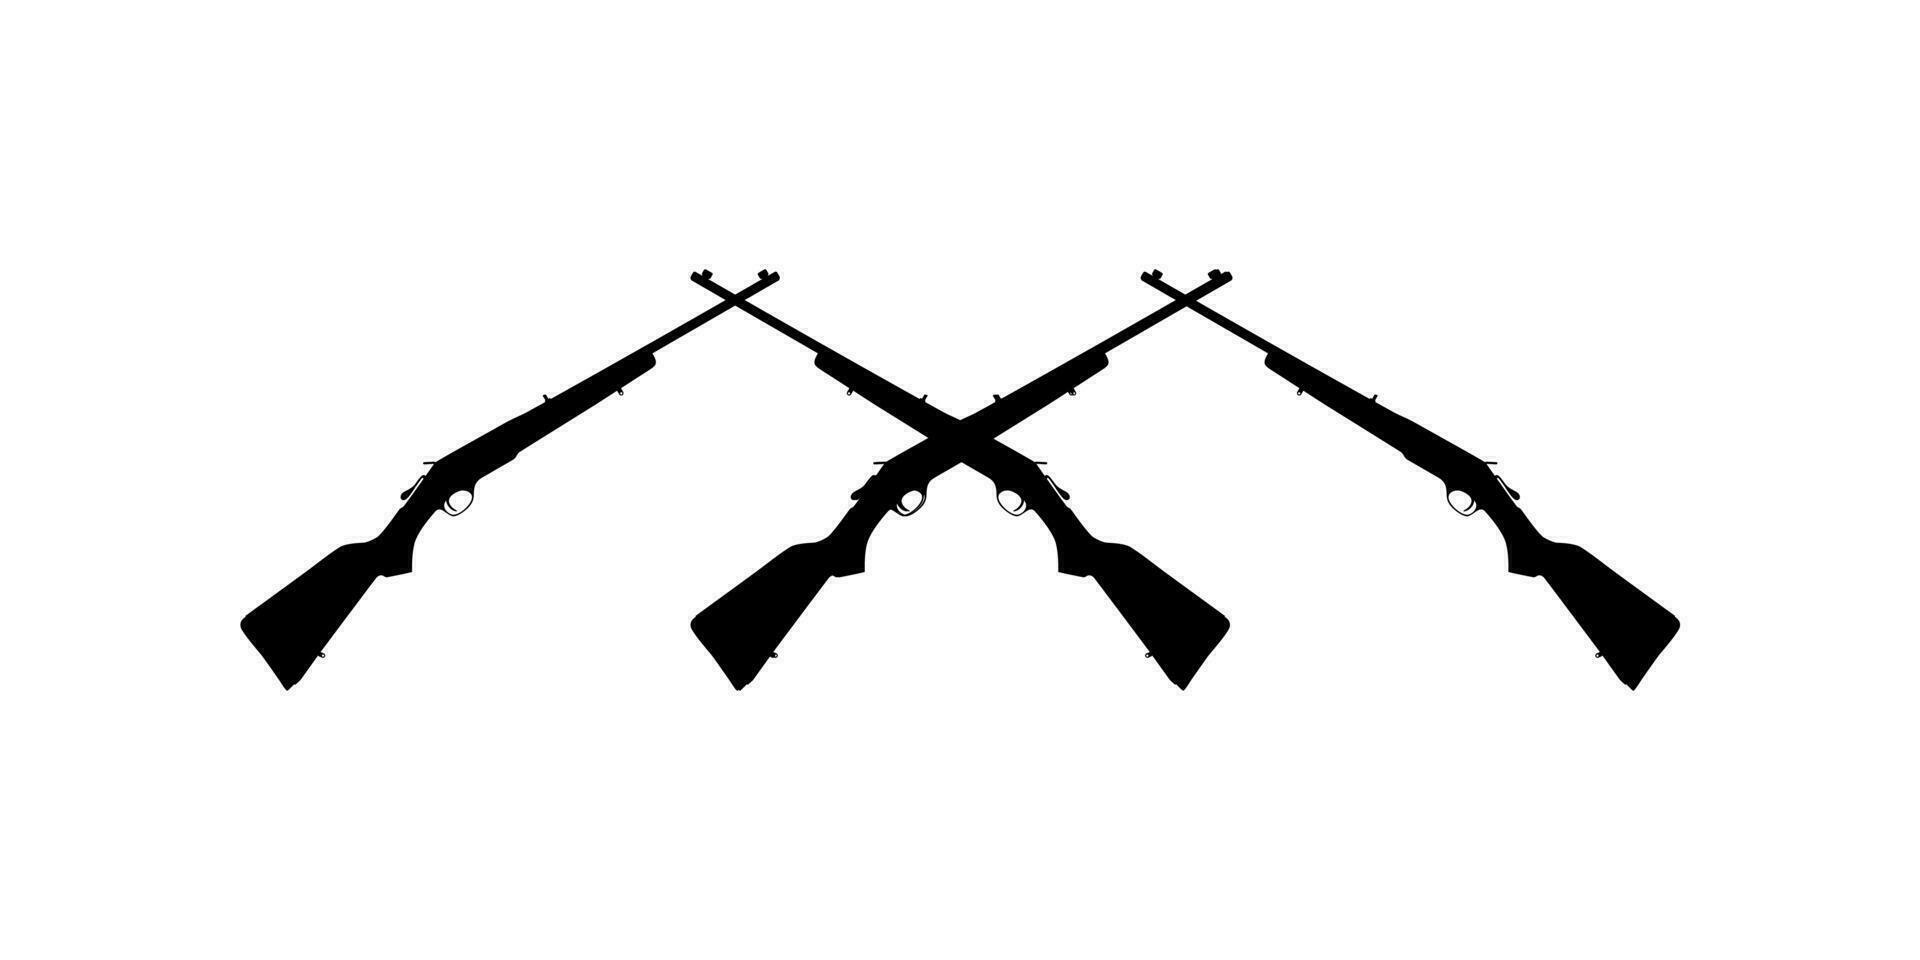 wapen silhouet, een lang geweer is een categorie van vuurwapens met lang vaten, voor pictogram. logo, appjes, website, kunst illustratie of grafisch ontwerp element. vector illustratie